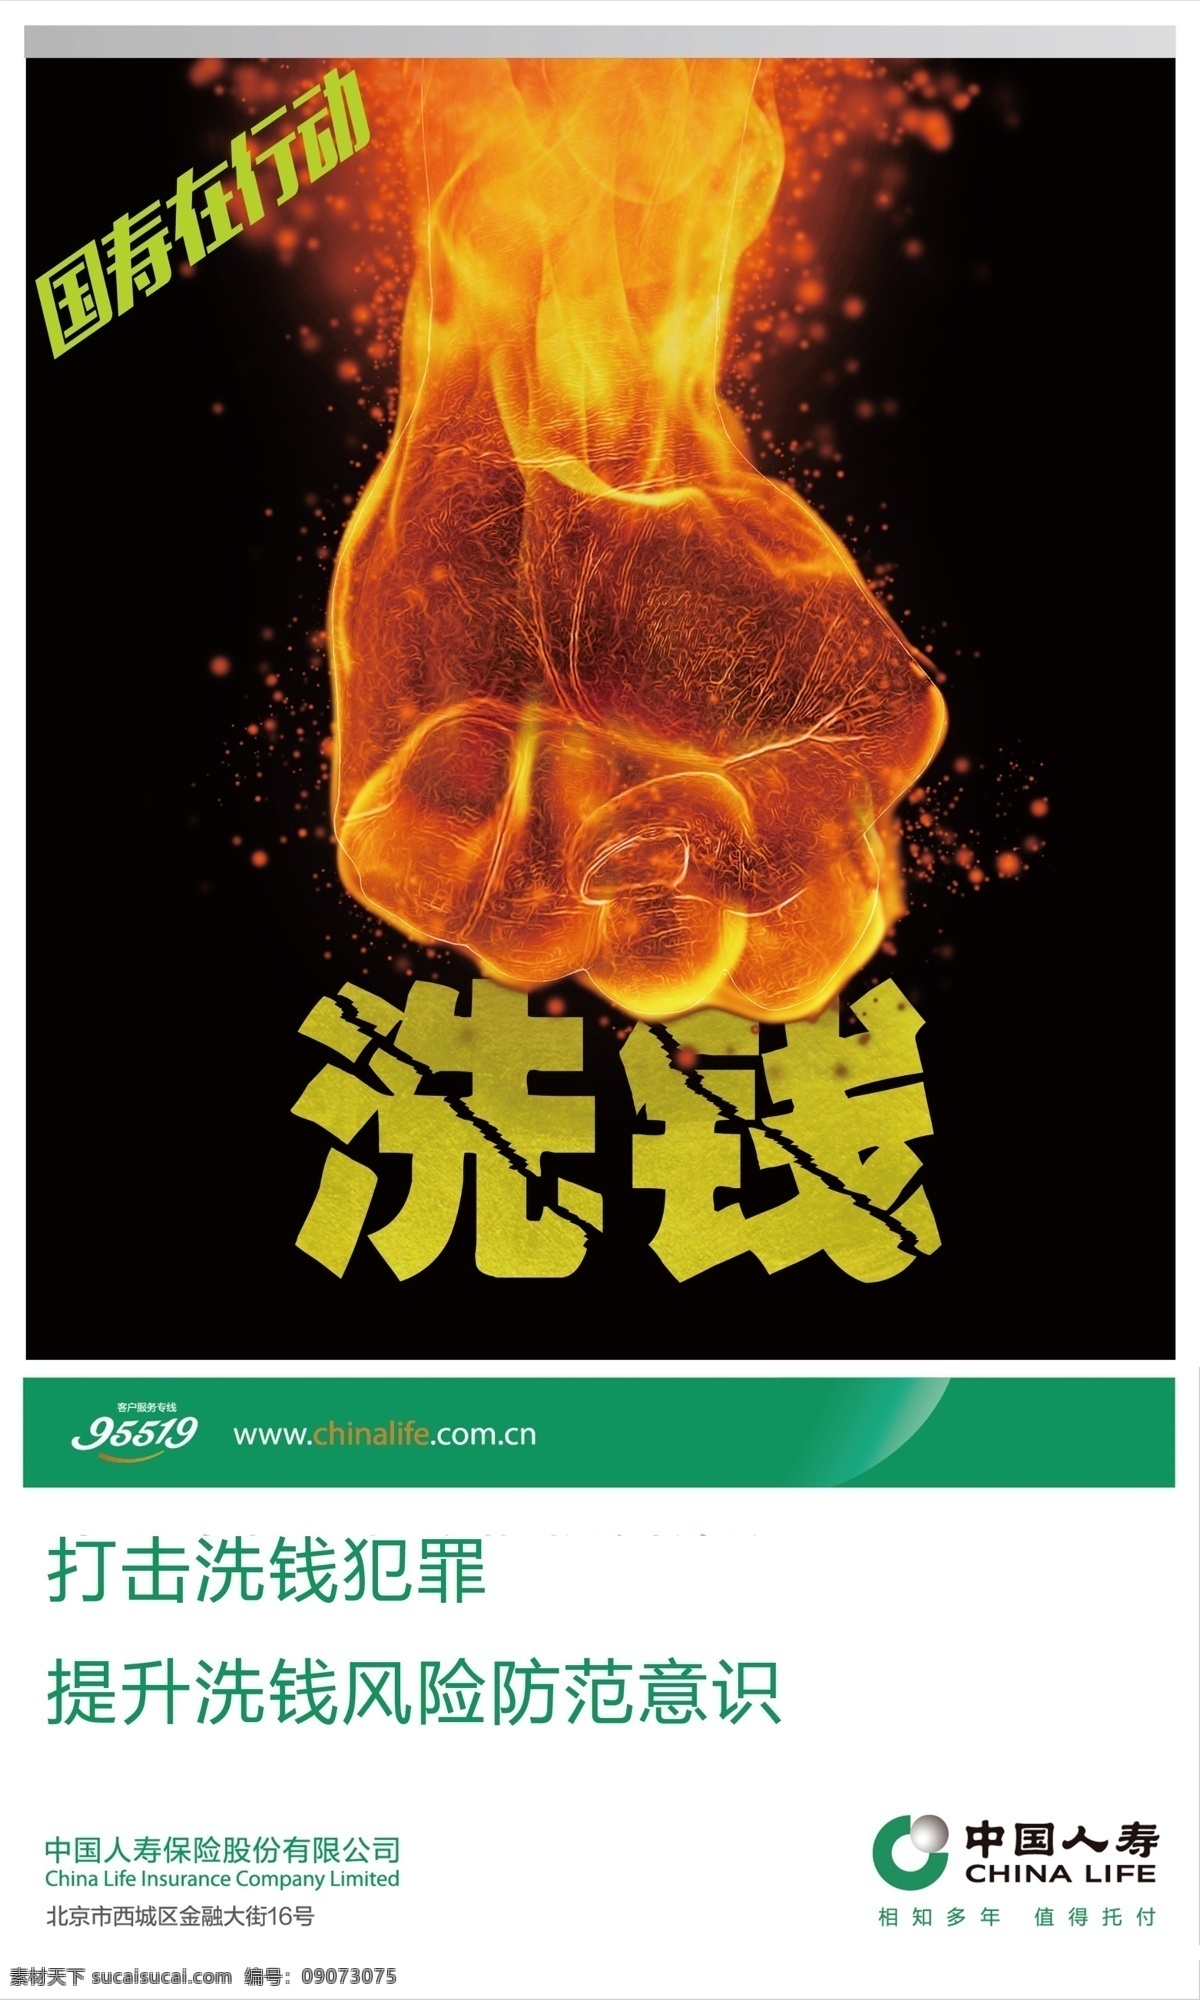 反洗钱 中国人寿 火焰 拳头 展架 海报